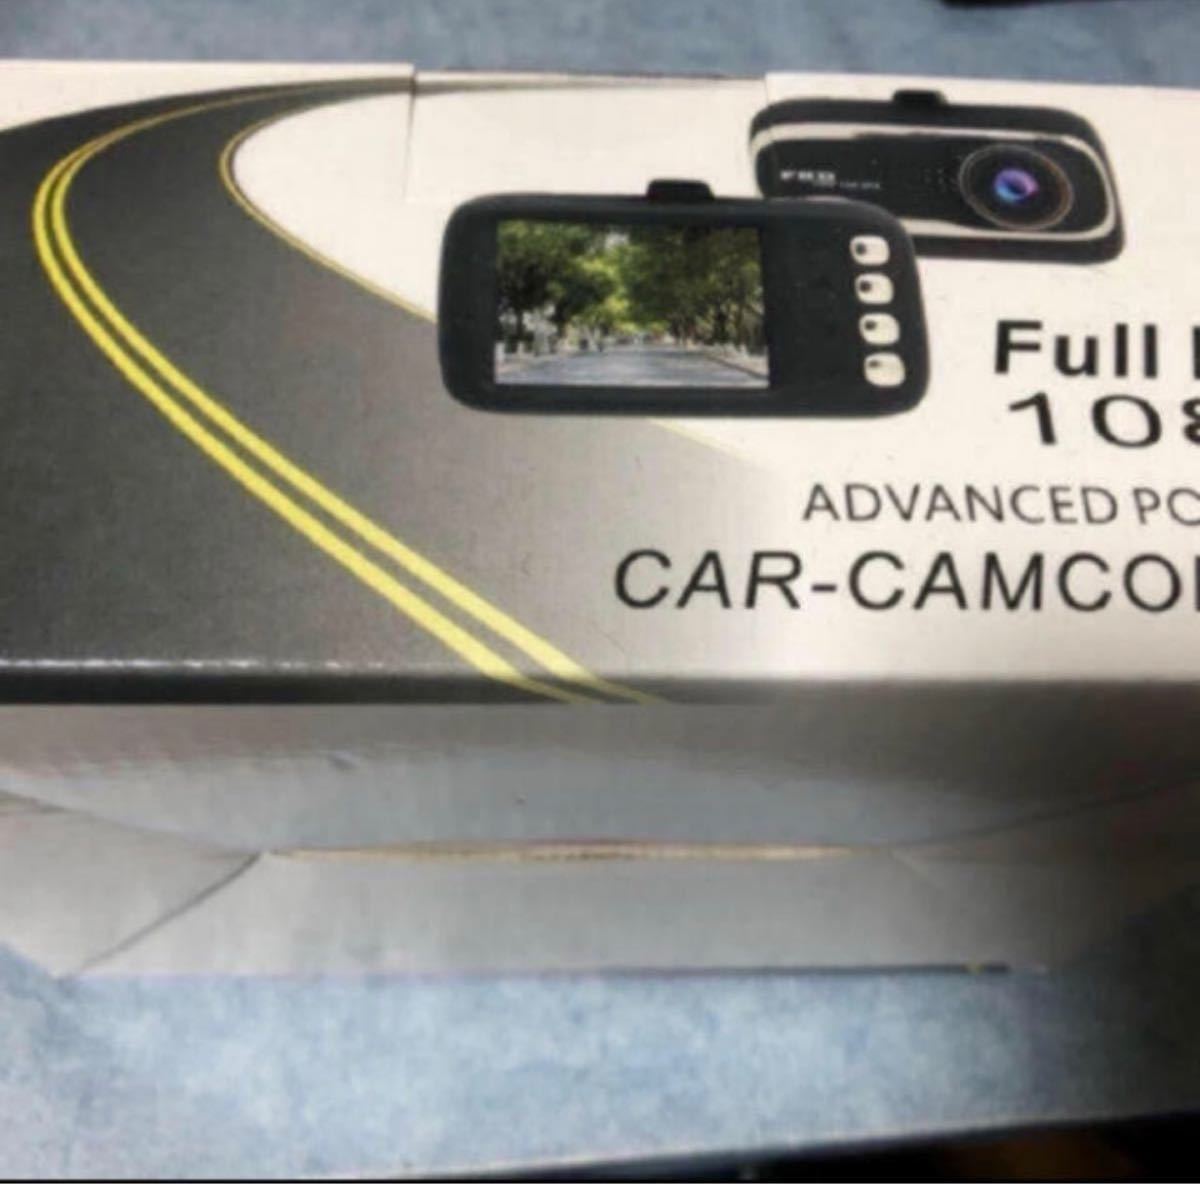 full HD 1080 CAR-CAMCORDER ドラレコ ドライブレコーダ